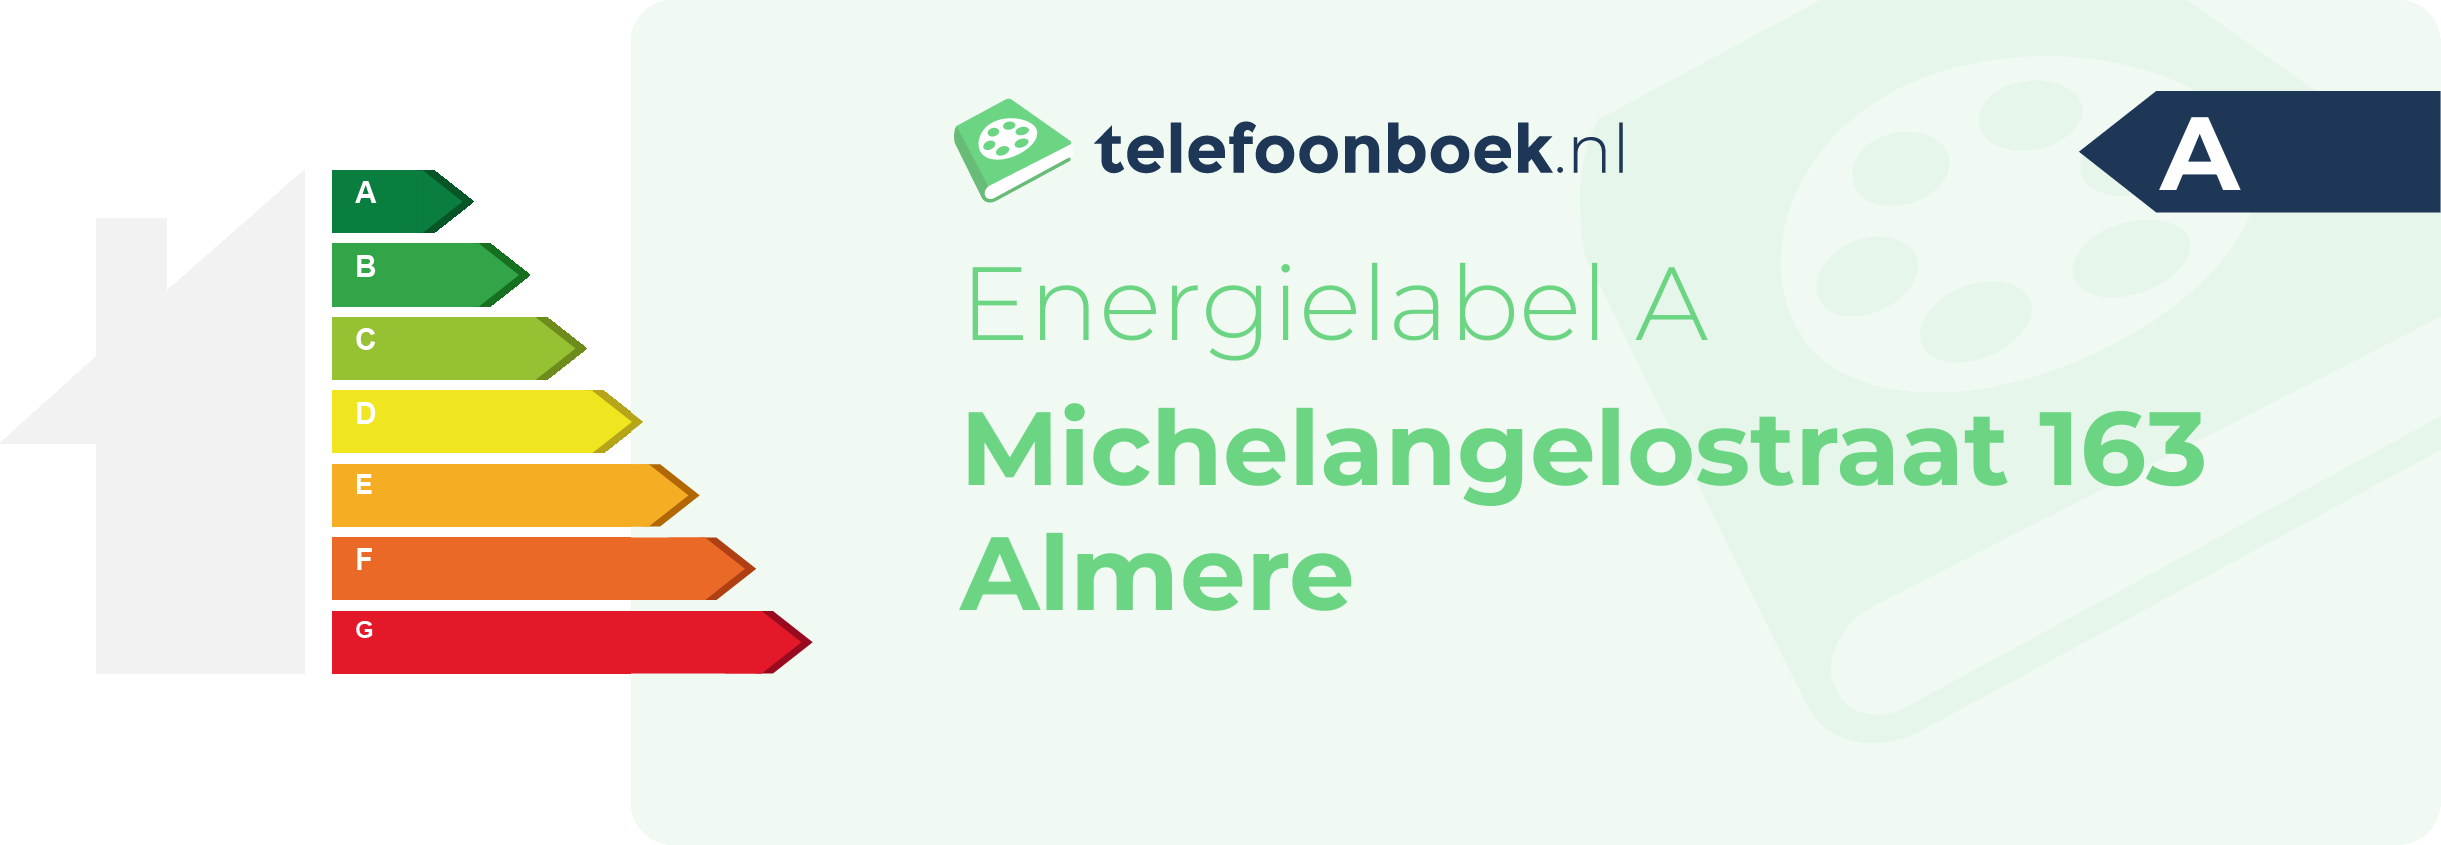 Energielabel Michelangelostraat 163 Almere